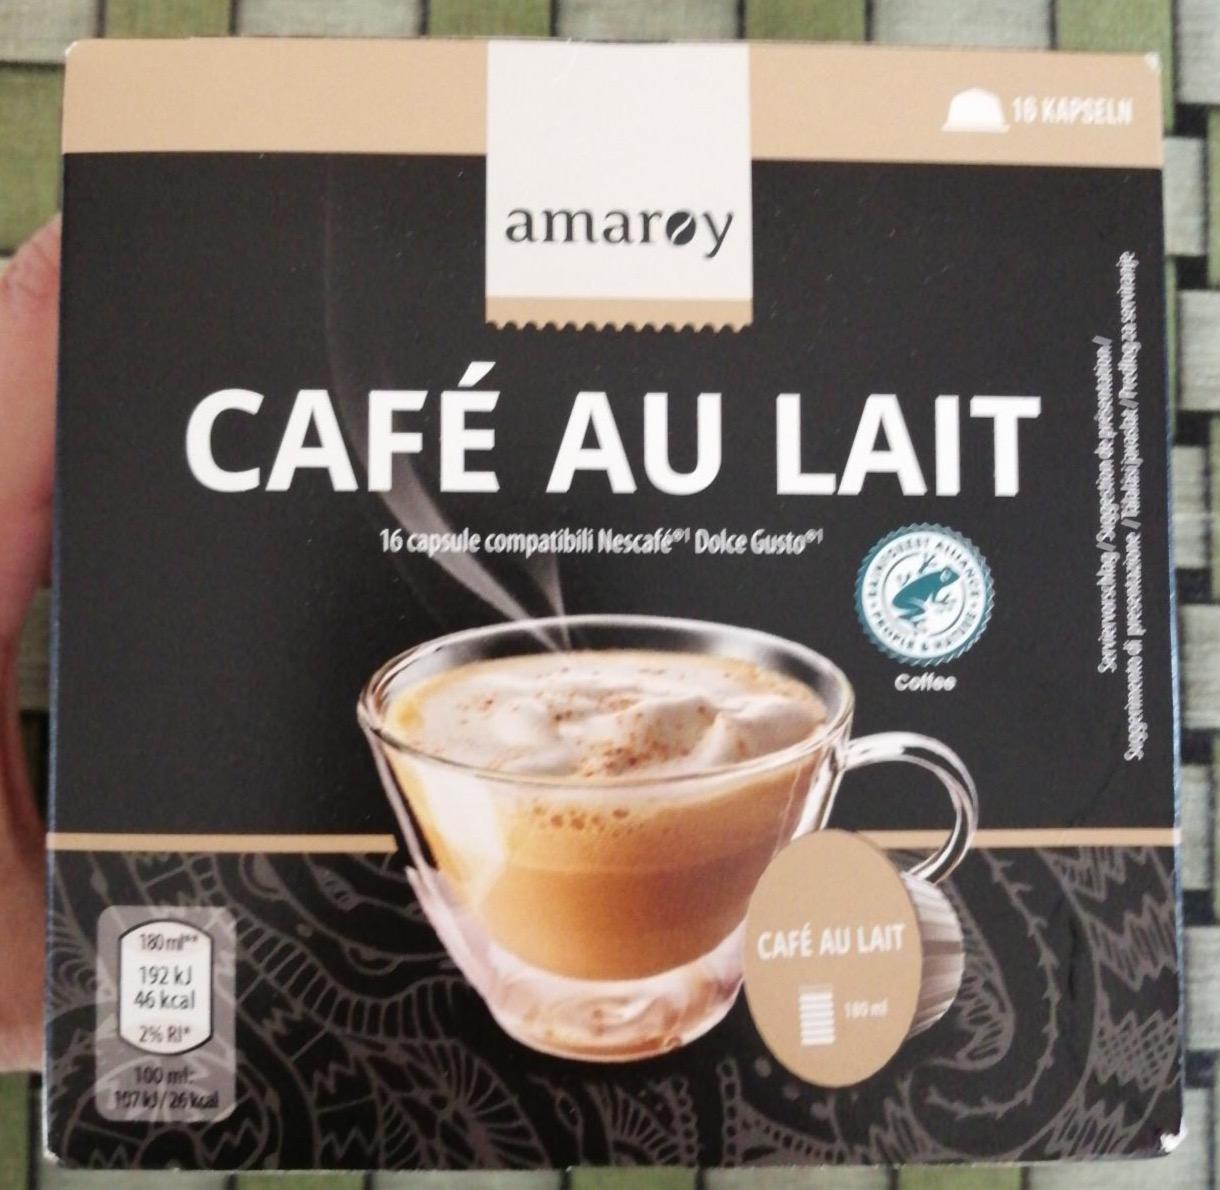 Képek - Cafe au lait kávékapszula Amaroy